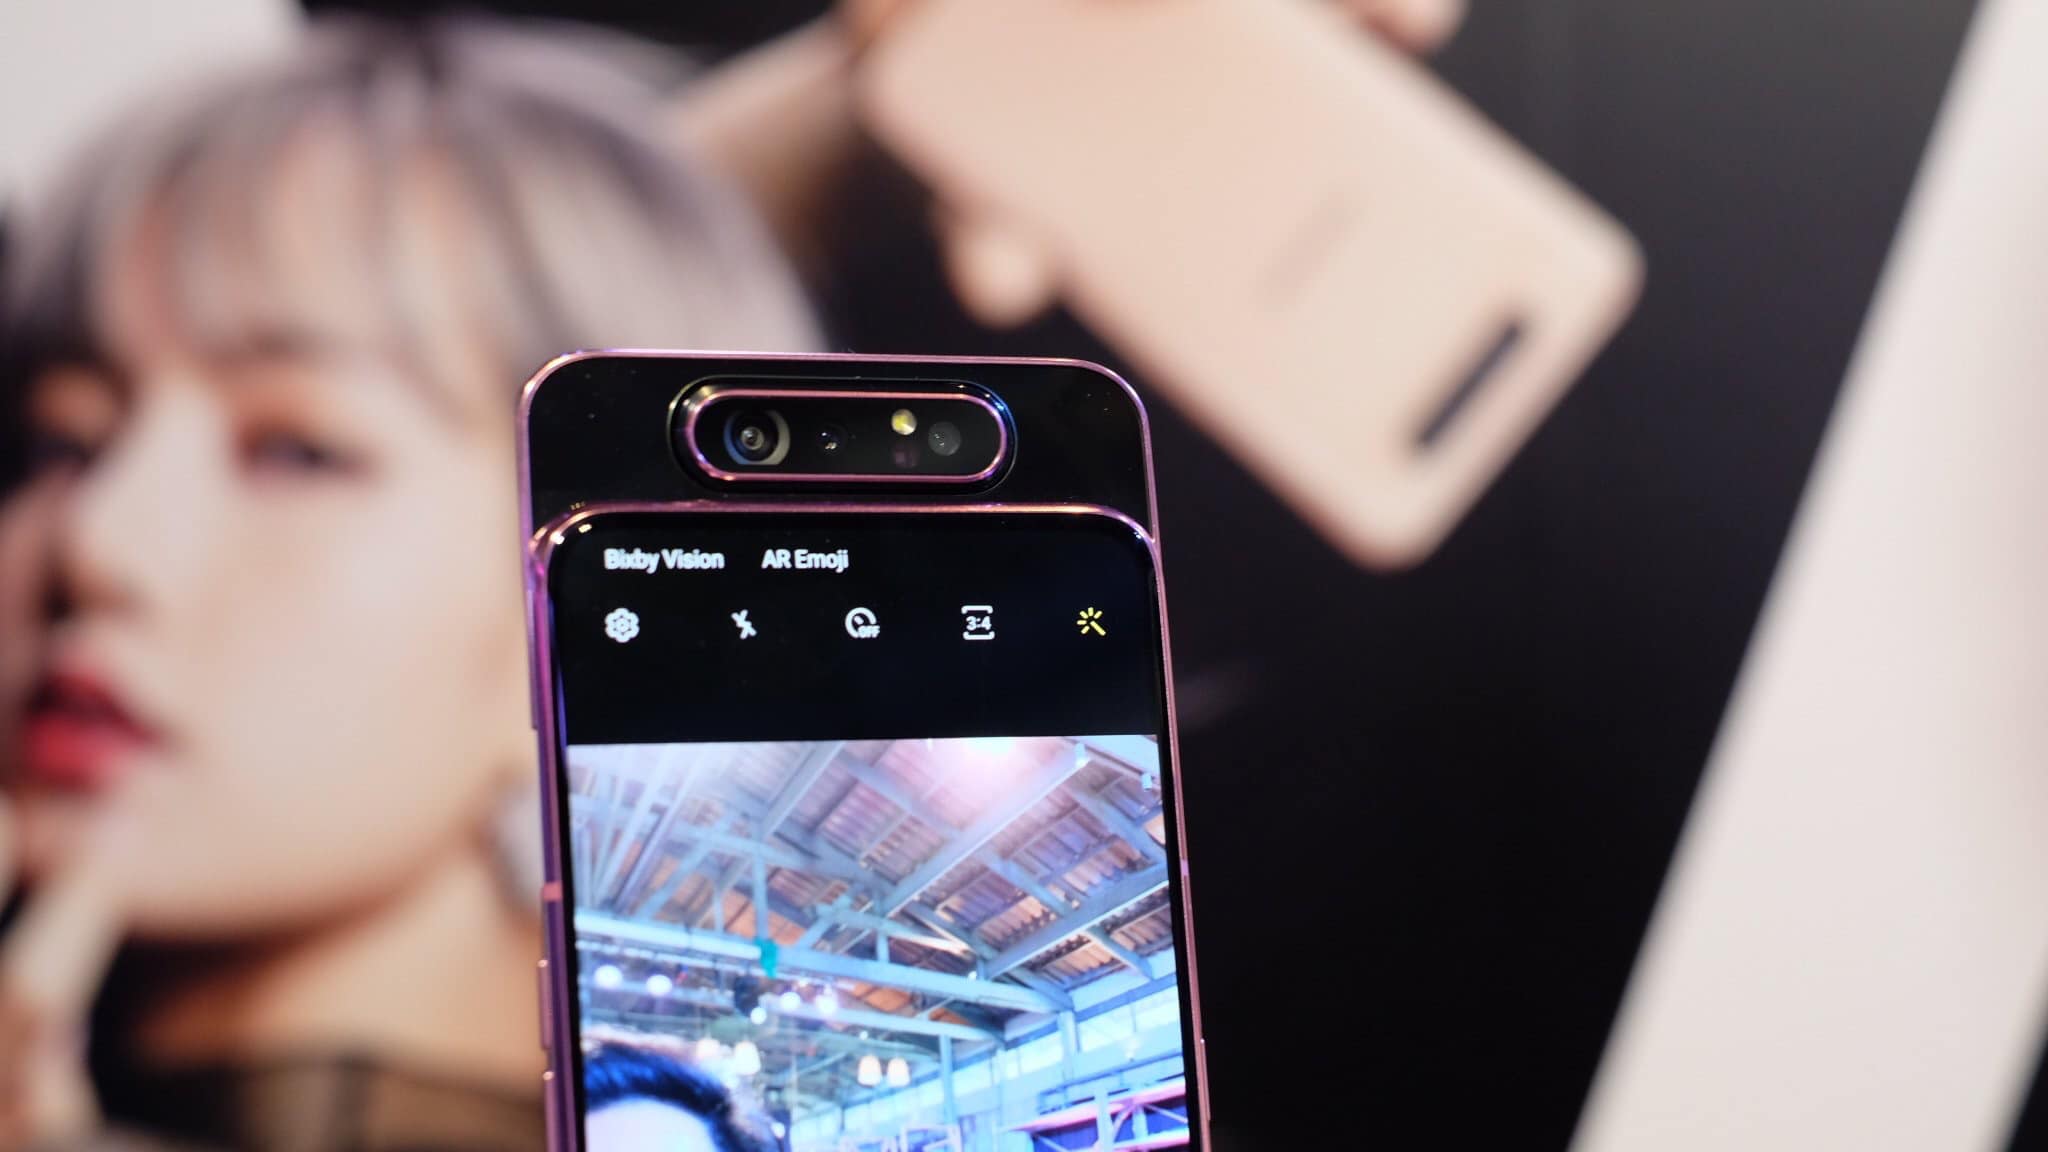 Cận cảnh Samsung Galaxy A80 phiên bản BLACKPINK
Edition: Sự kết hợp giữa hai tông màu Đen và Hồng